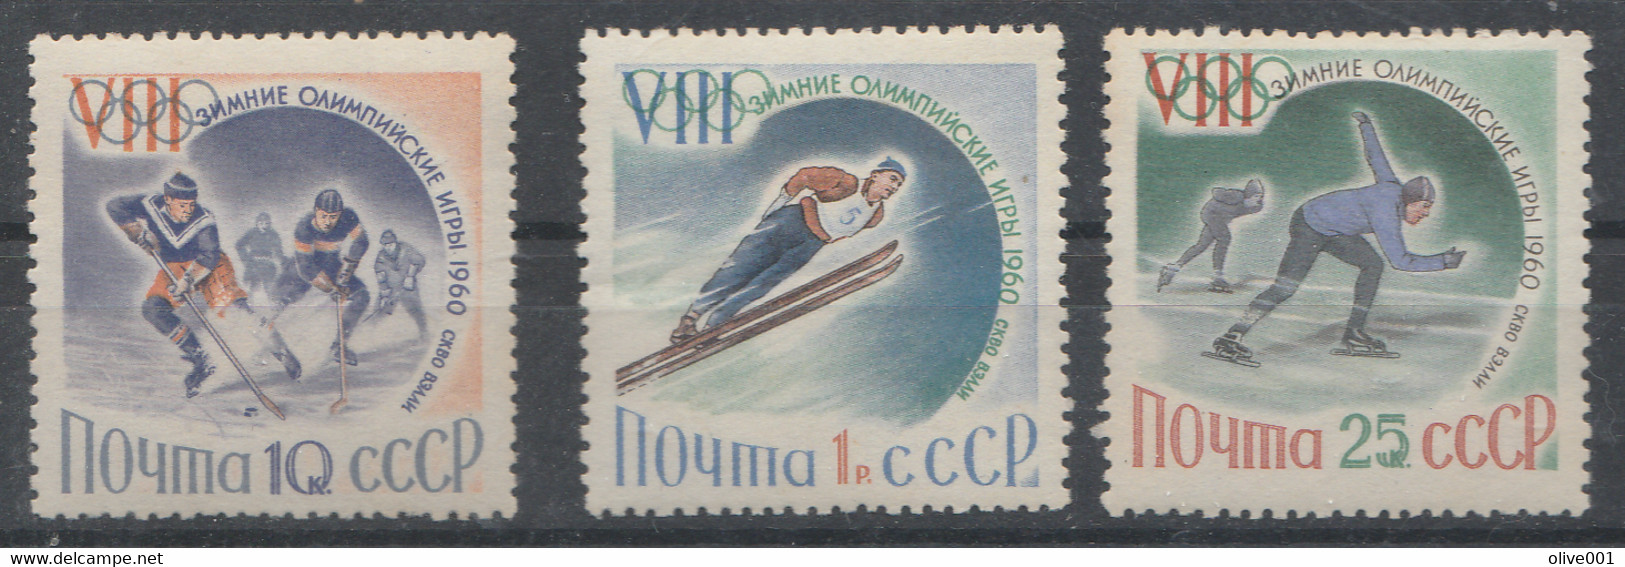 URSS - Timbres De 1960 - 3 Valeurs Des Jeux Olympiques D'hiver De Squaw Valley - MI N° 2317/19 MNH ** - Hiver 1960: Squaw Valley